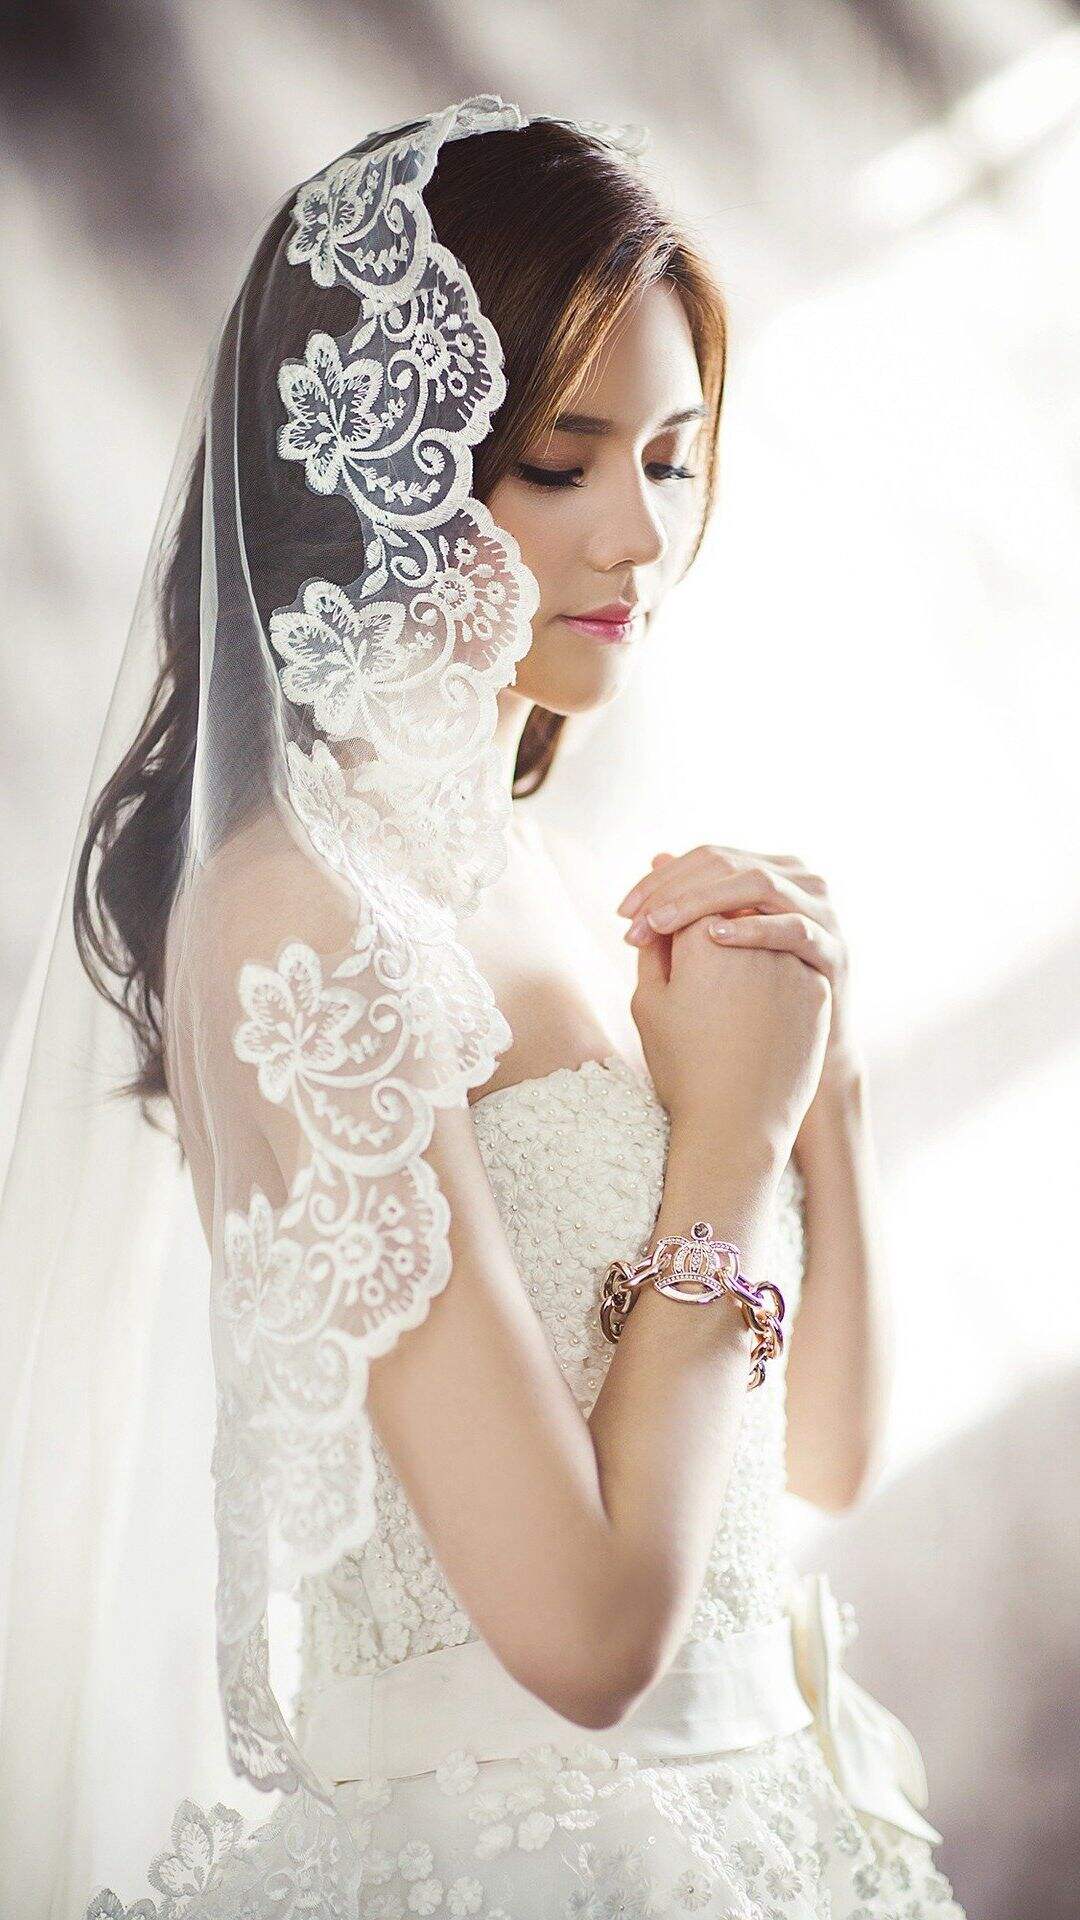 穿婚纱的欧美漂亮新娘子双手抱拳祈祷唯美高清手机壁纸图片